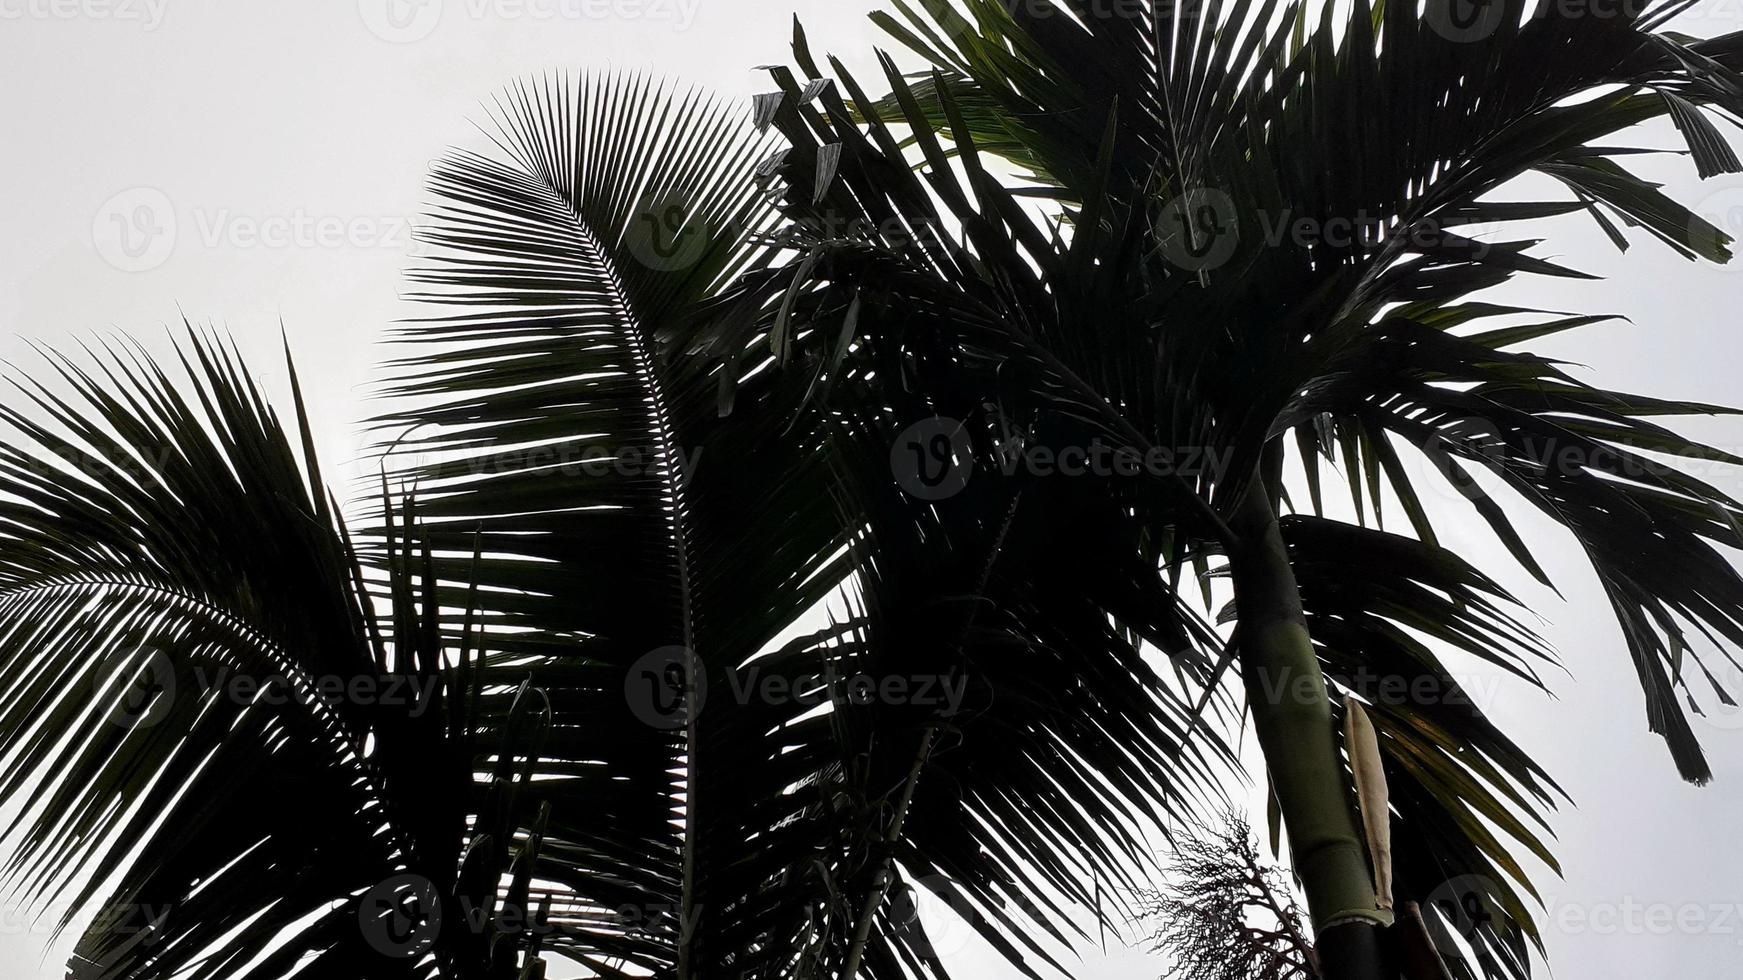 dimmig landskap stiger från lång betel, kokos träd, och grå himmel, med natur morgon- bakgrund begrepp. foto